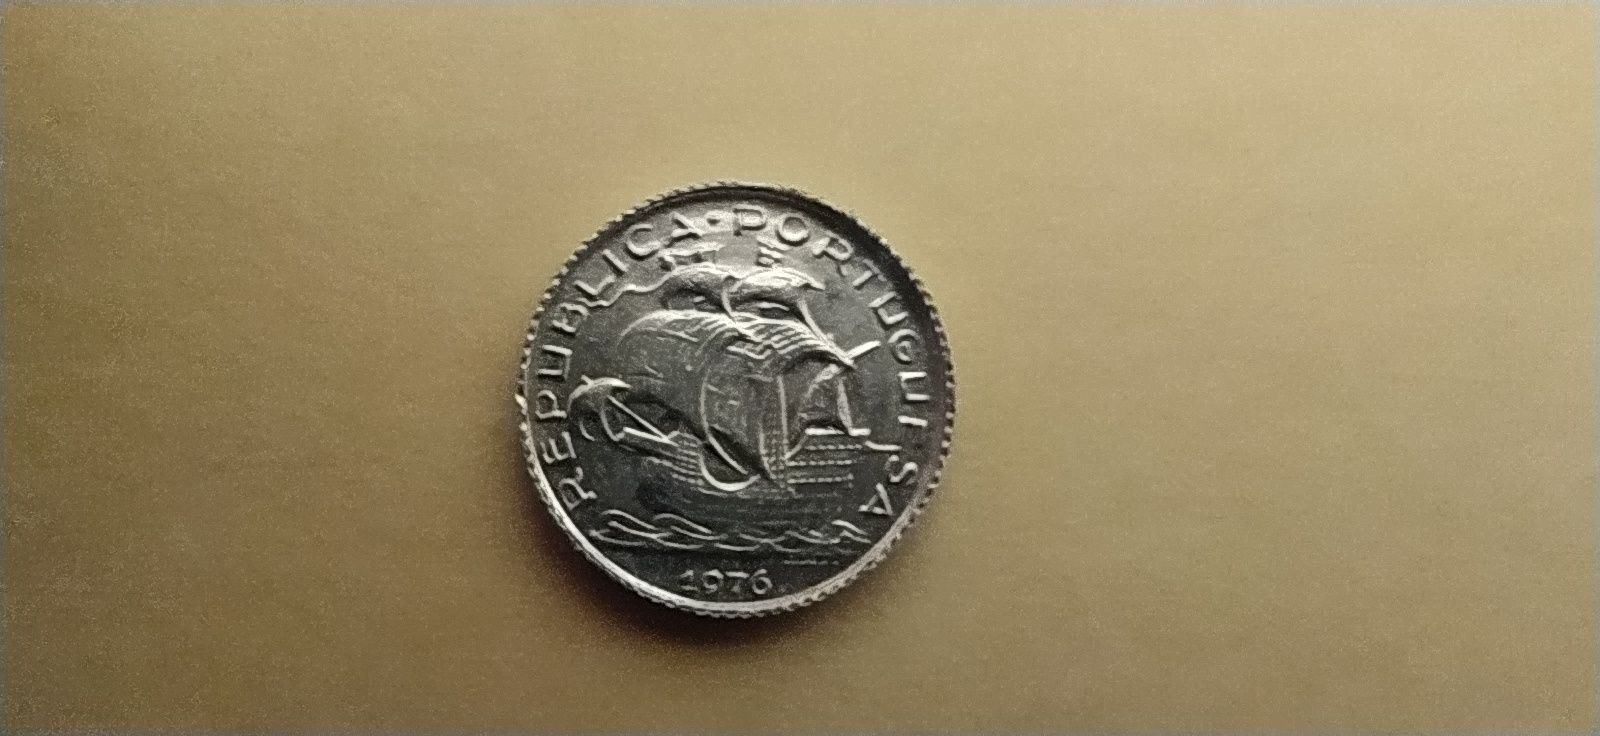 2$50 República Portuguesa 5mm 1976